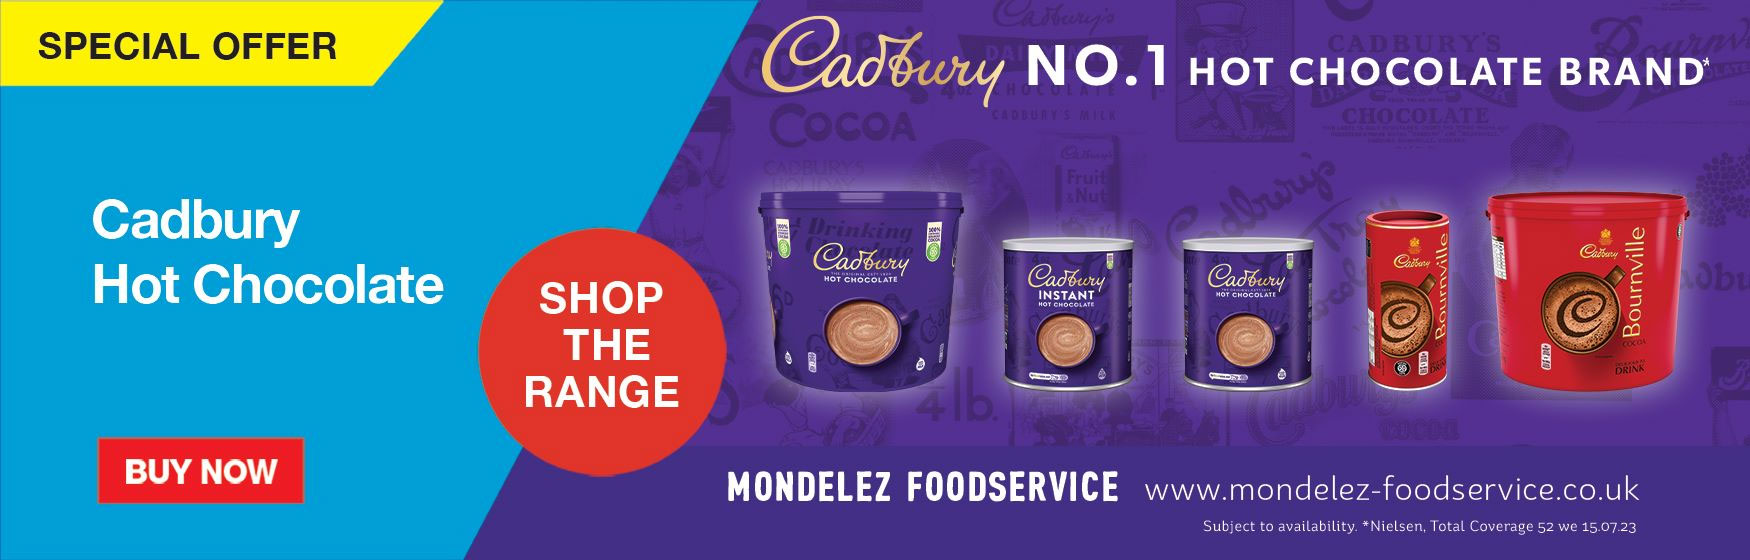 Cadbury No. 1 Hot Chocolate Brand